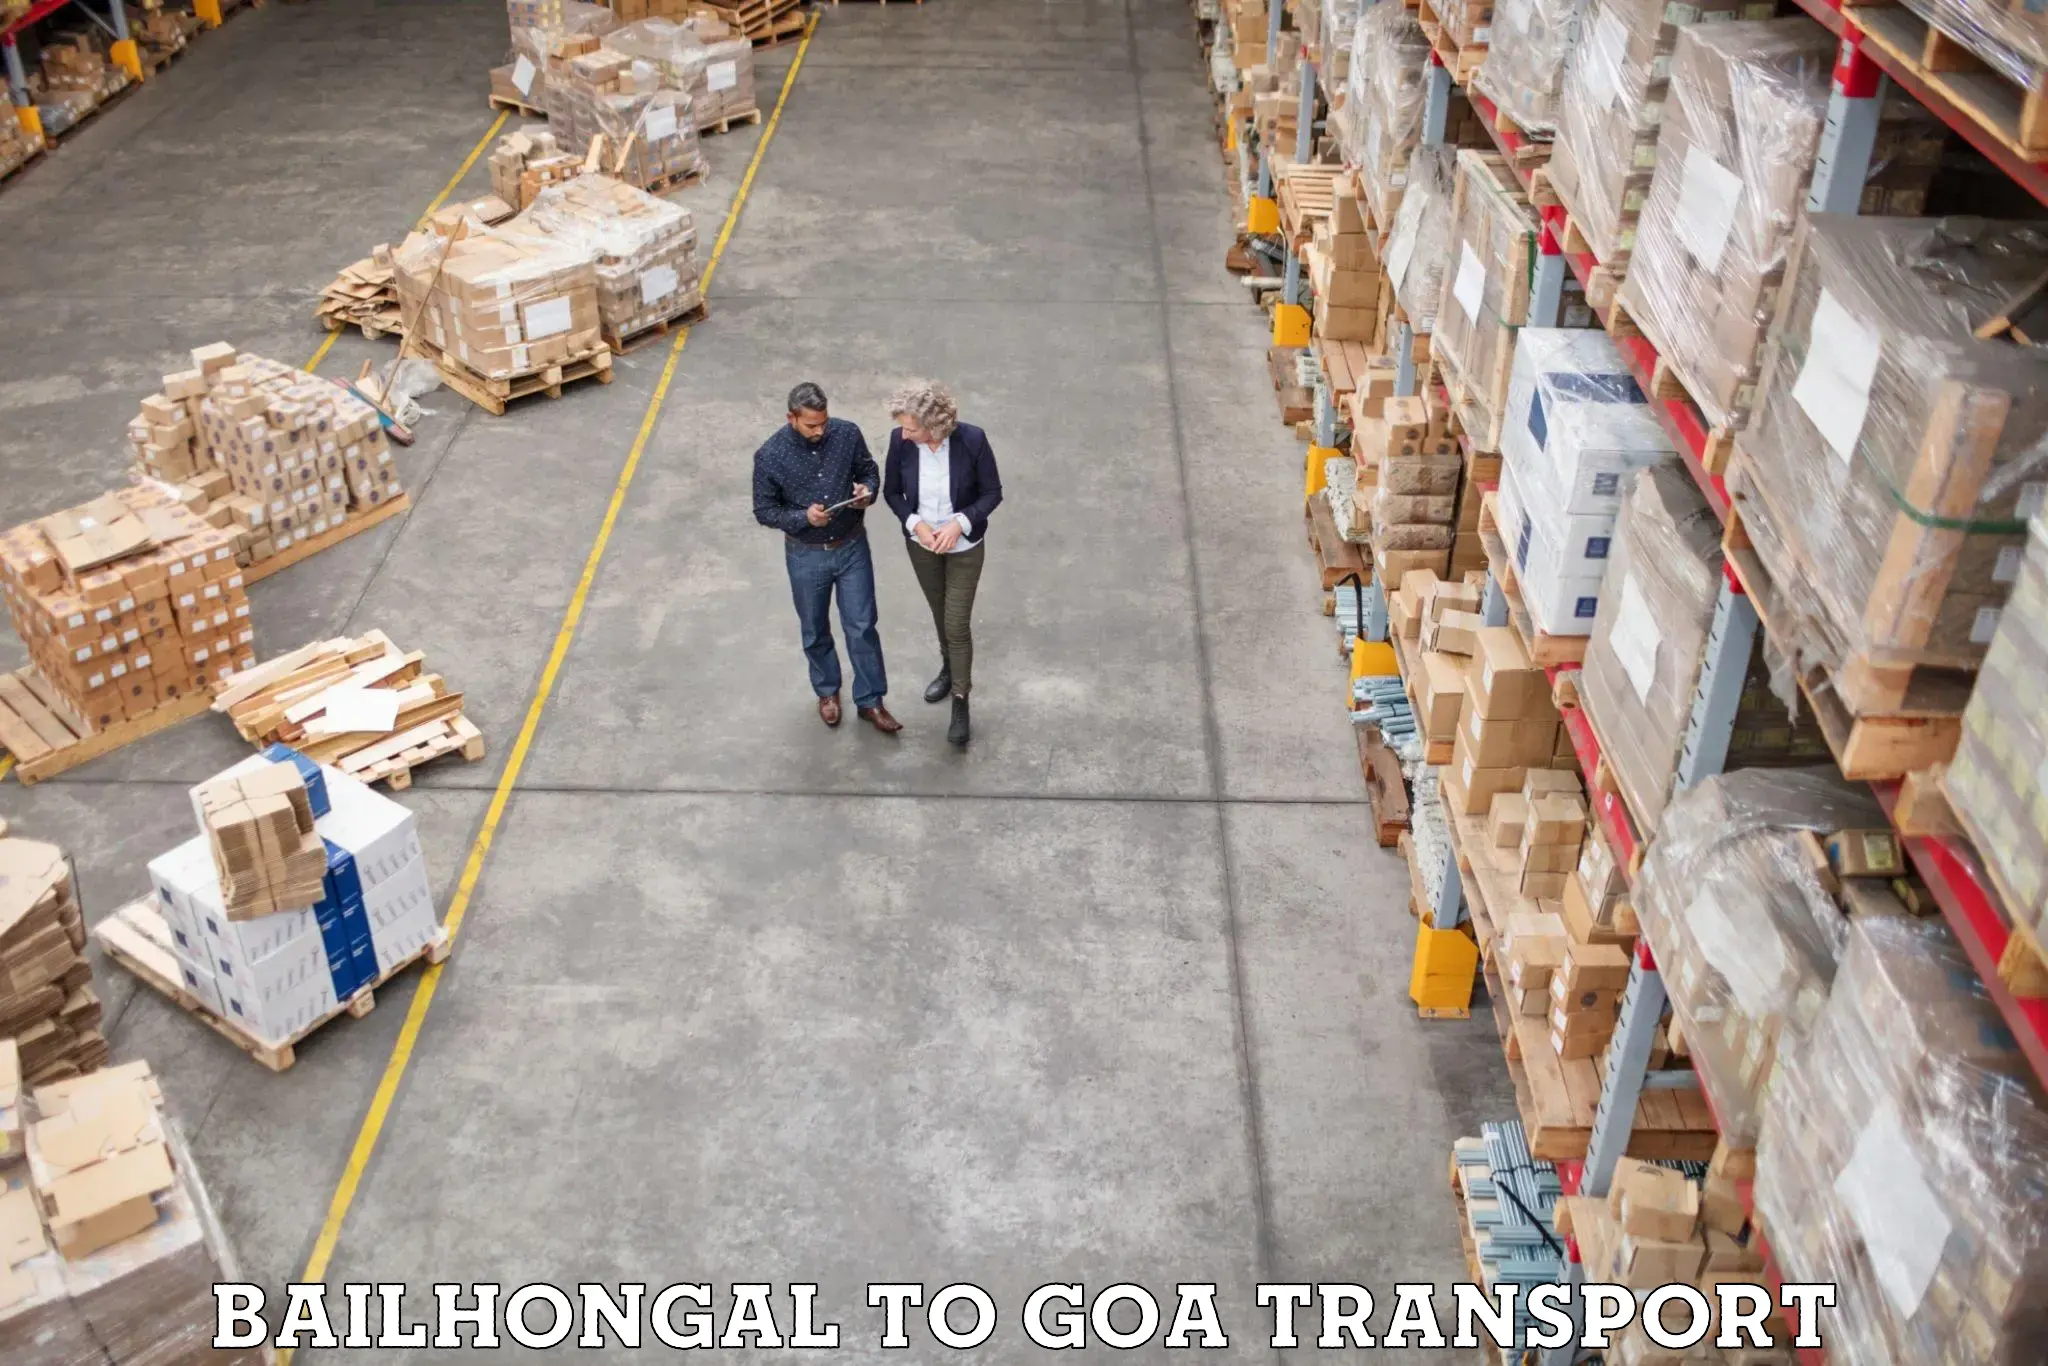 Furniture transport service Bailhongal to IIT Goa